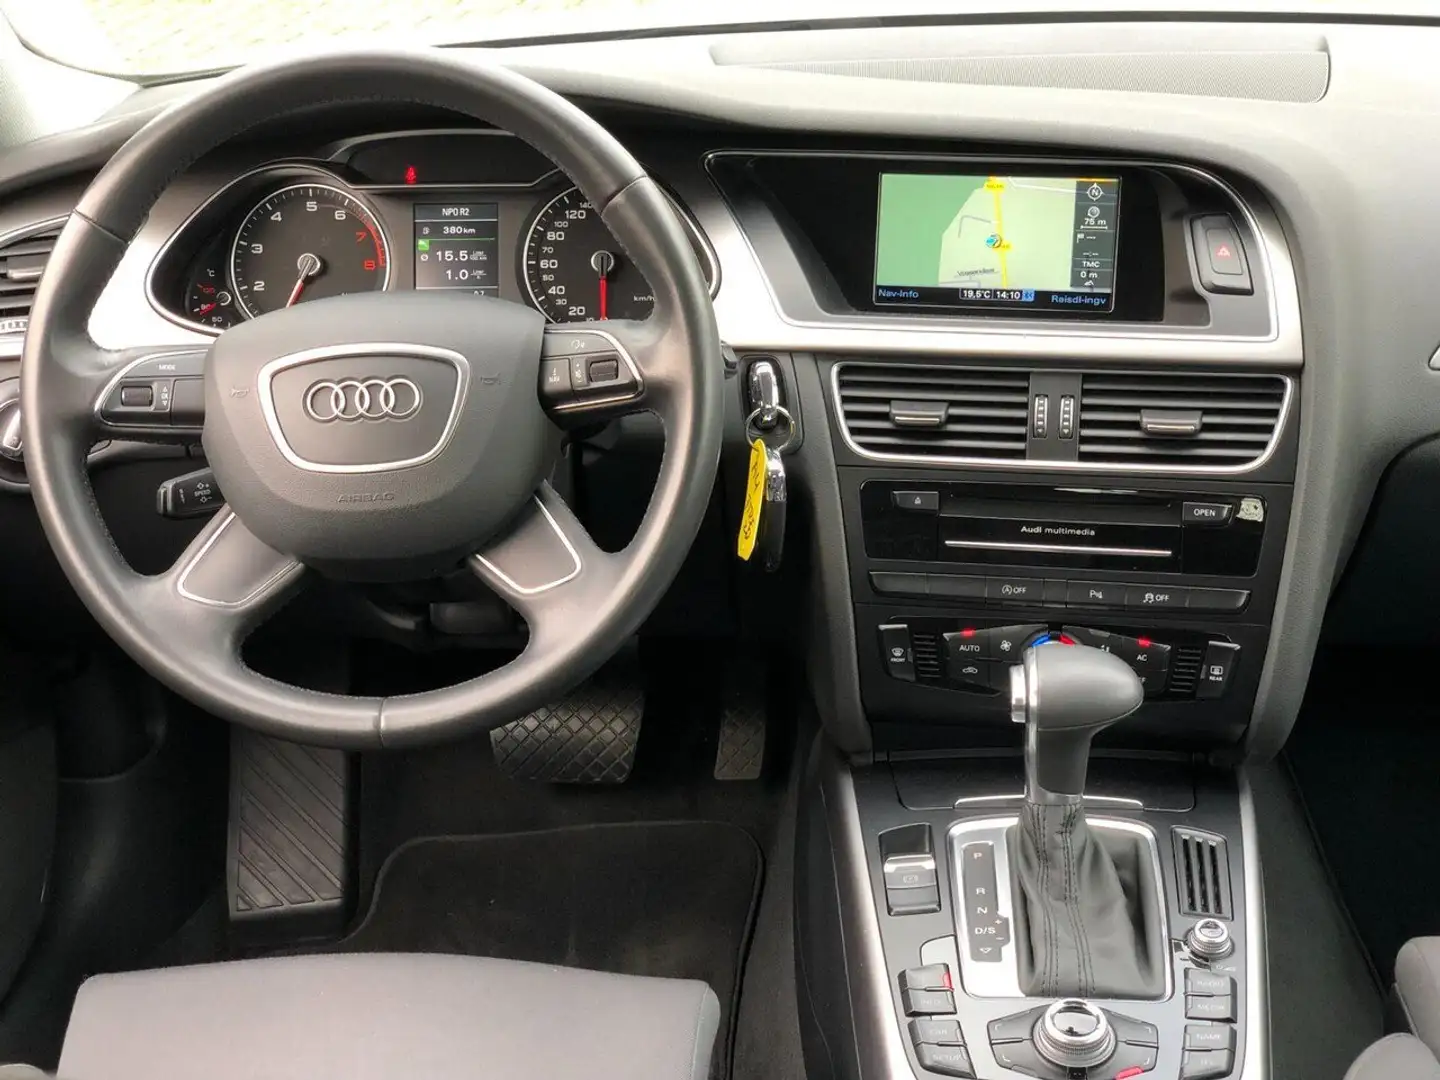 Audi A6 allroad 1.8 TFSI Business Ed - 2